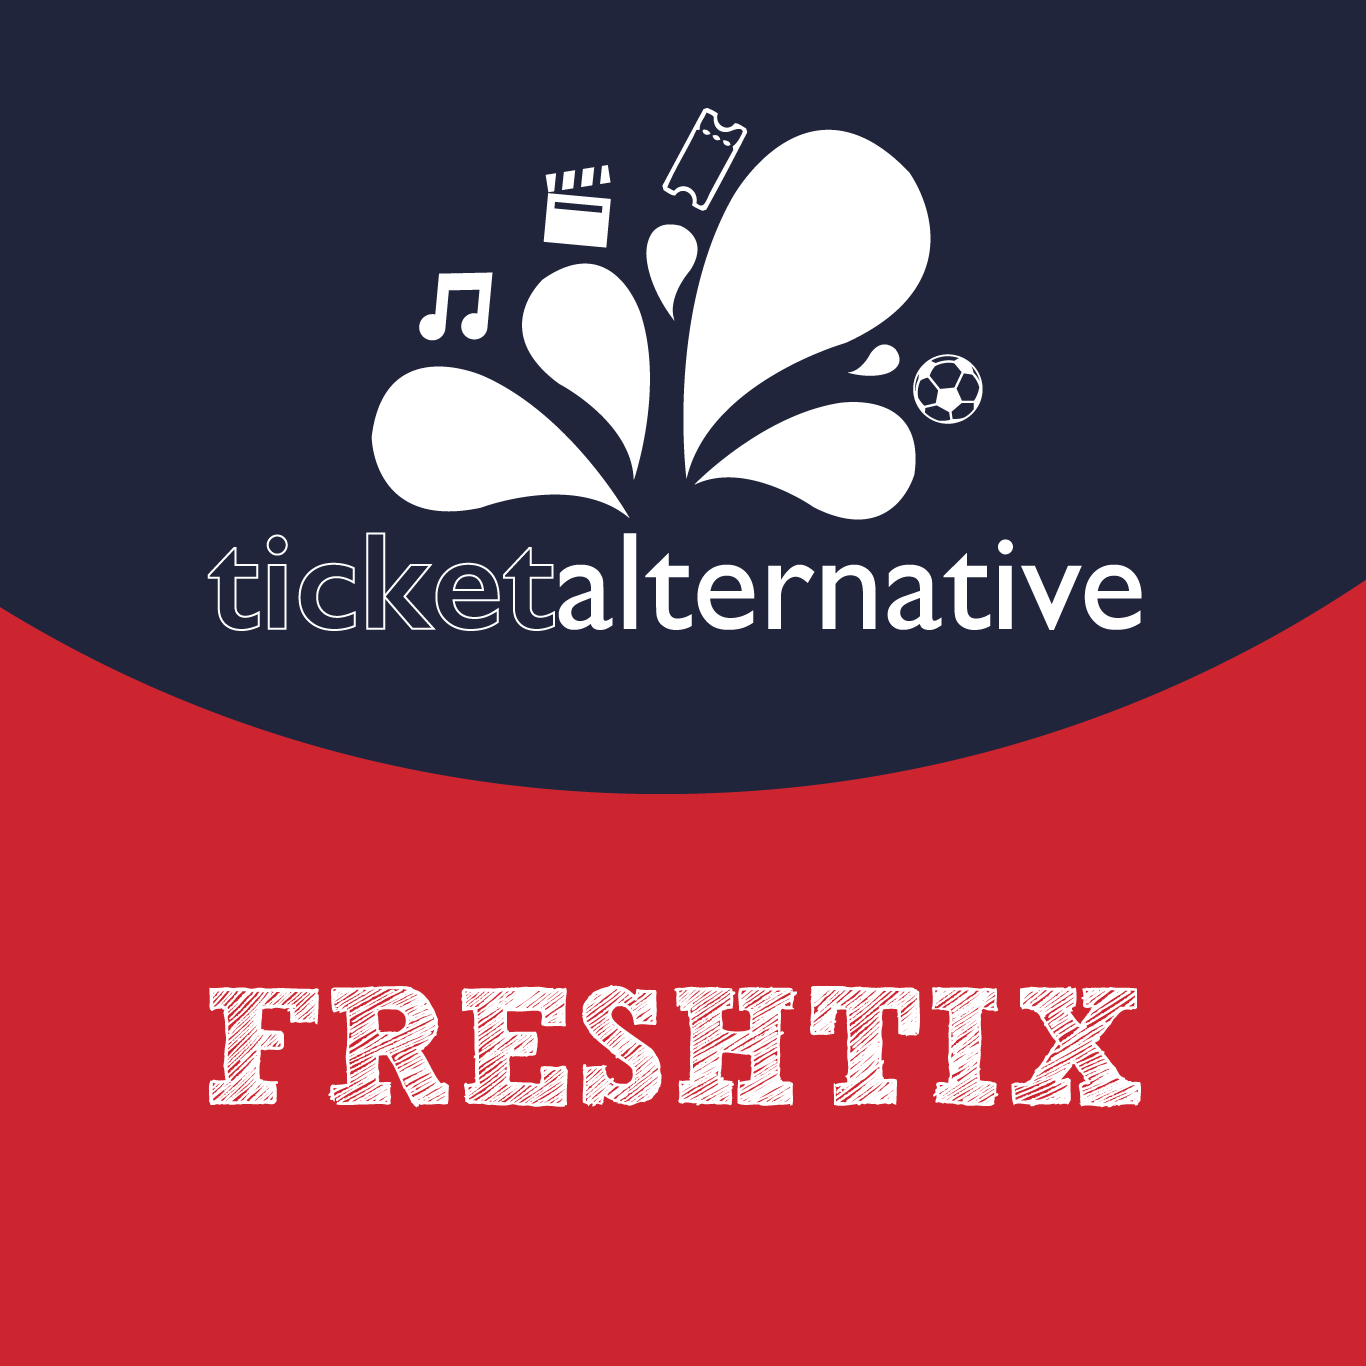 Freshtix Logo